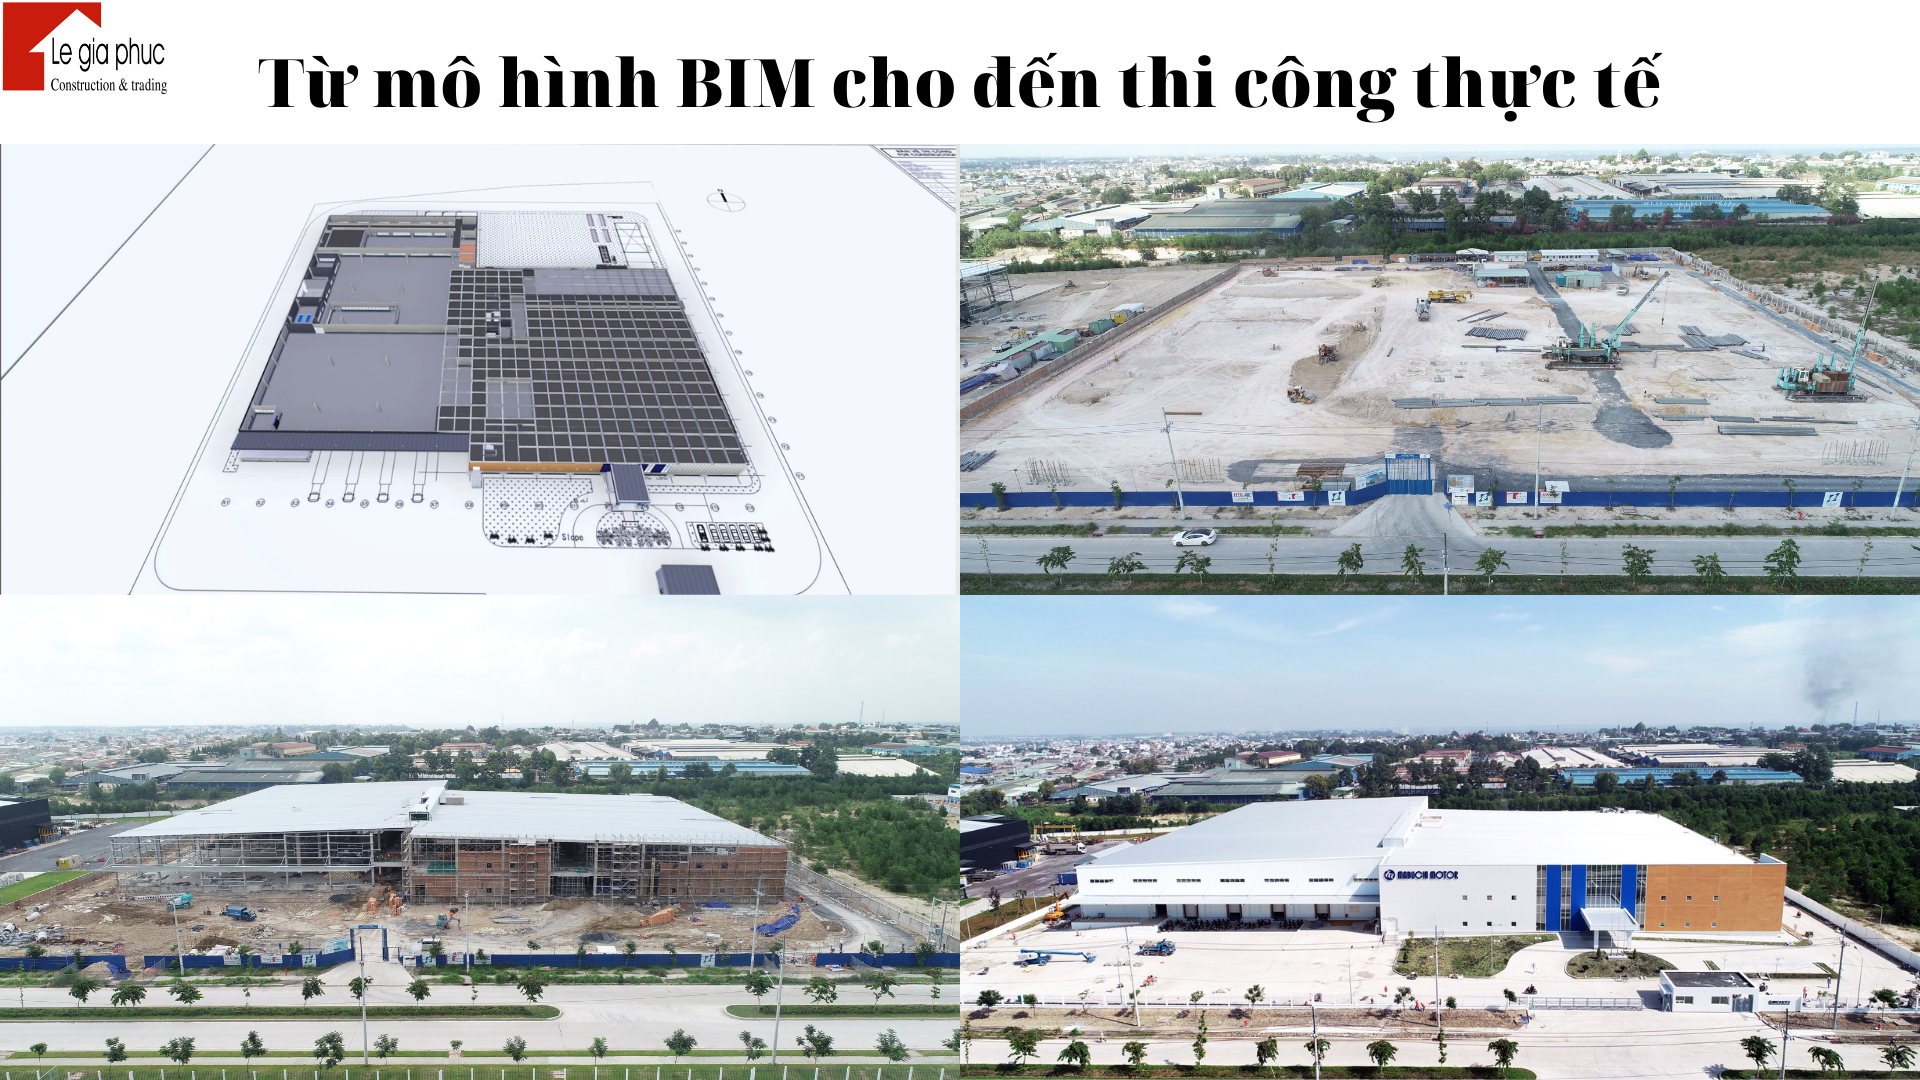 Các bản vẽ thực hiện theo mô hình BIM để xây dựng nhà xưởng, nhà công nghiệp